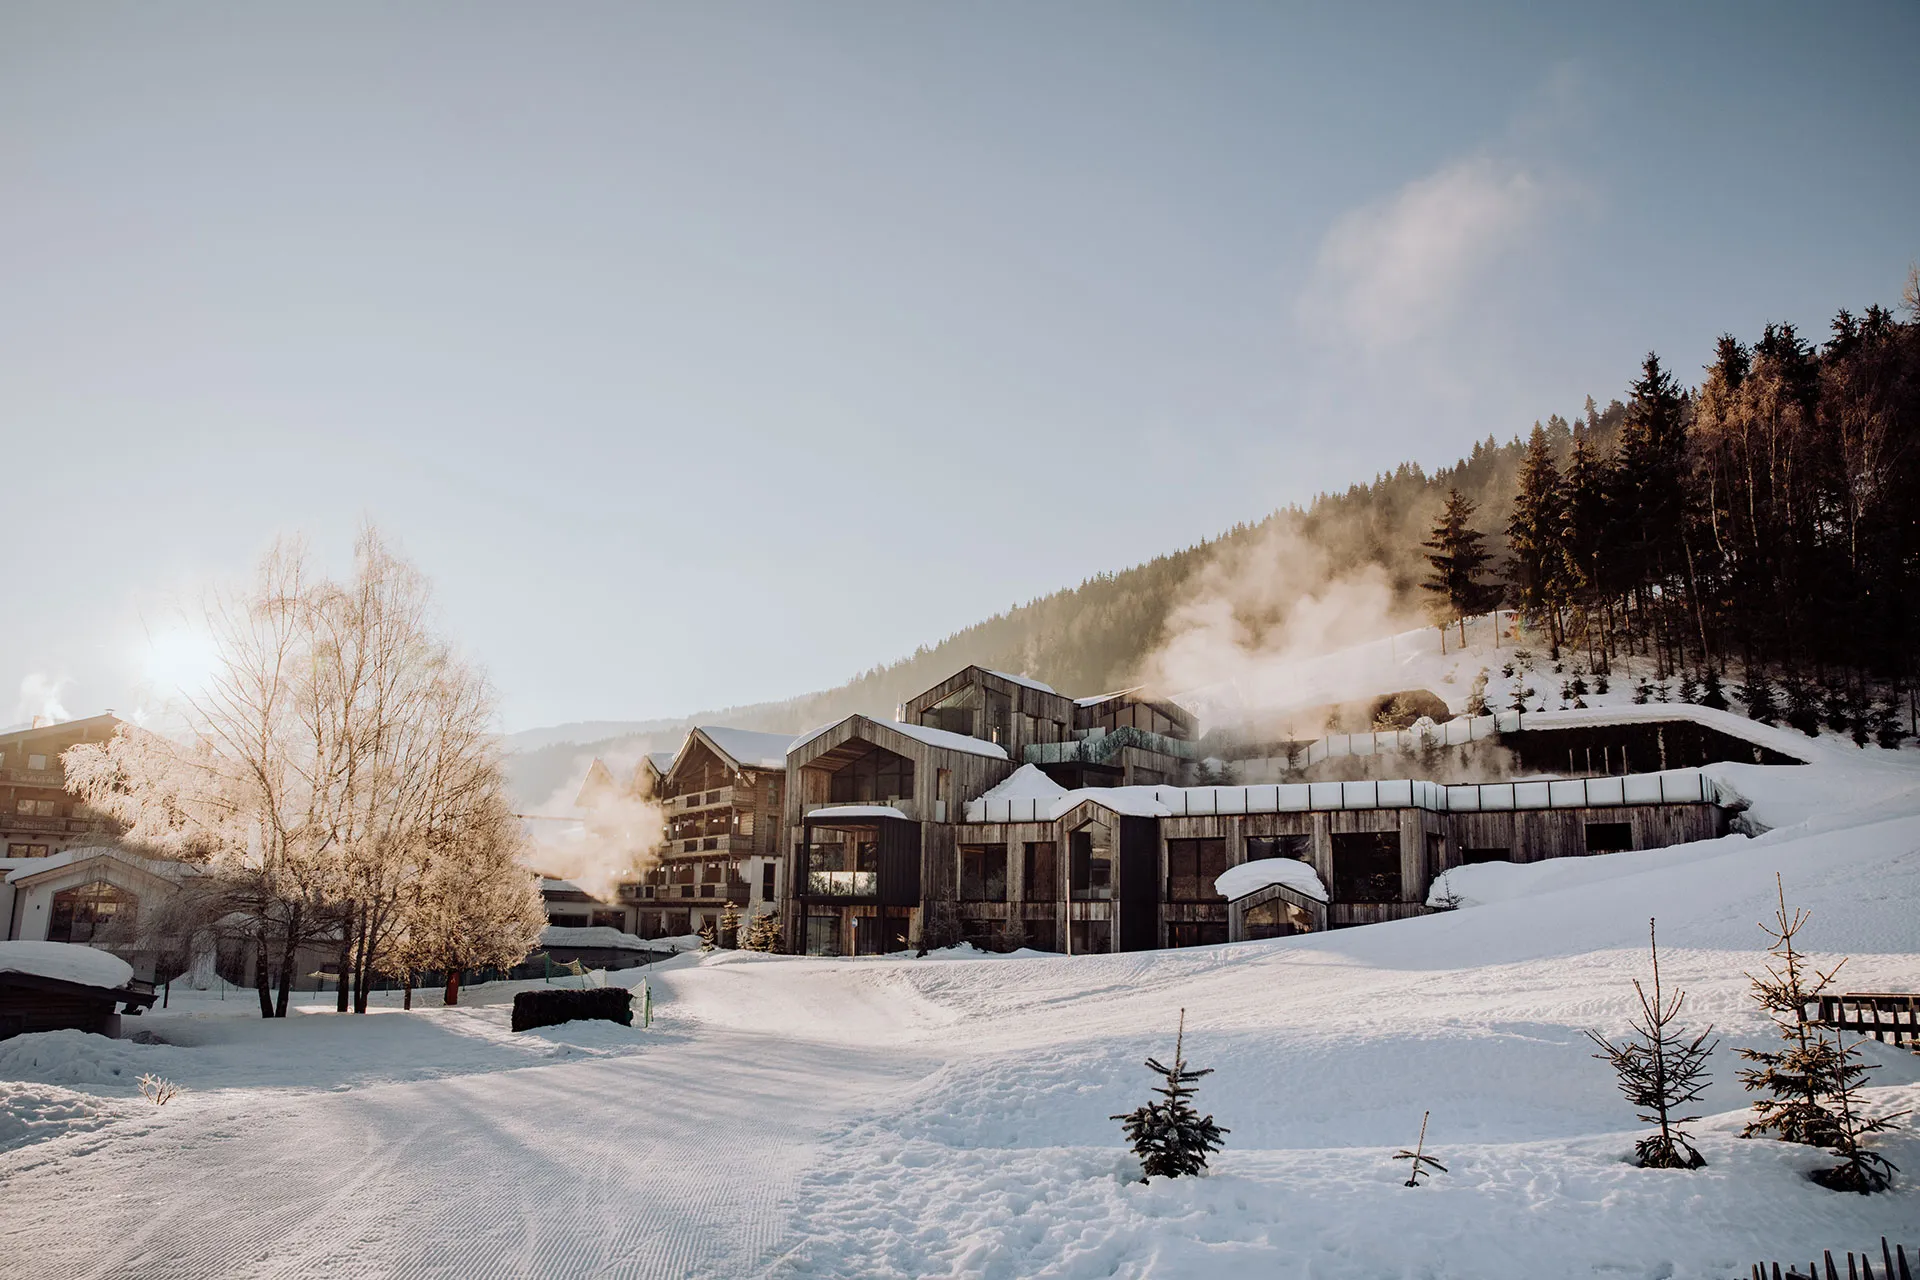 Aussenfassade eines Berghotels im Winter